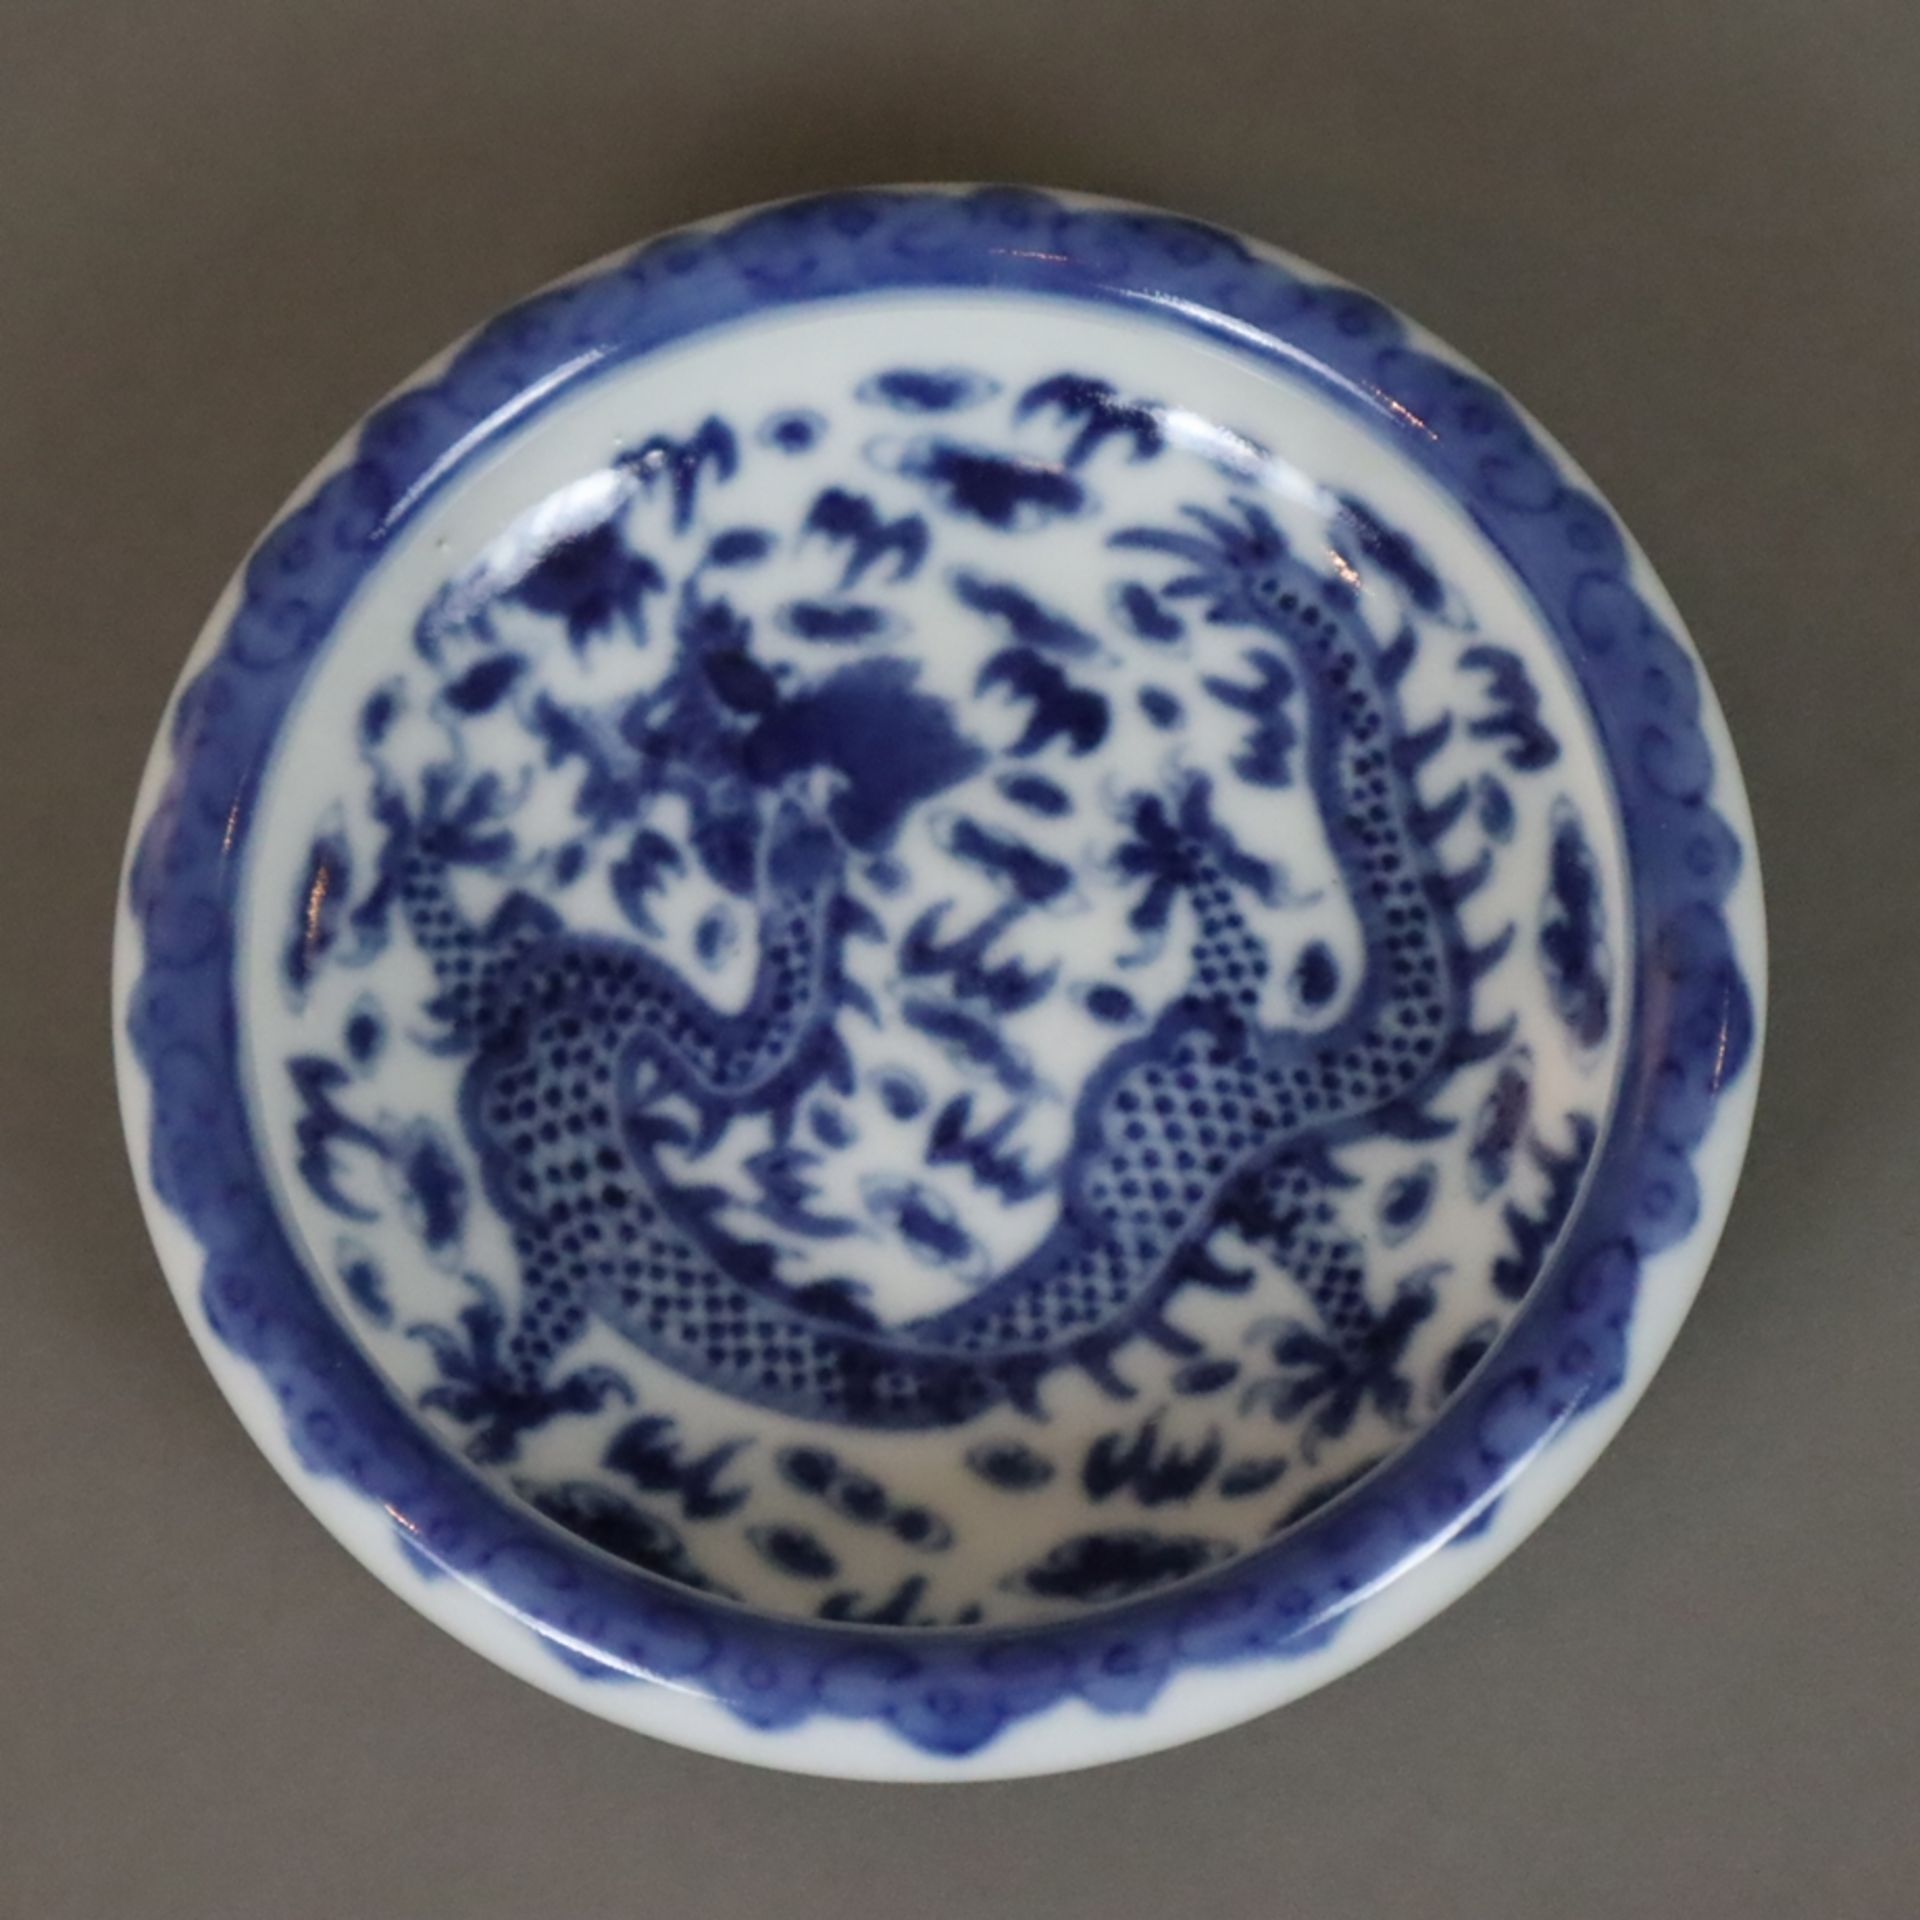 Pinsel-Waschschale mit Drachendekor - China 20. Jh., rundes Porzellanschälchen mit Drachenmotiv in - Image 2 of 6